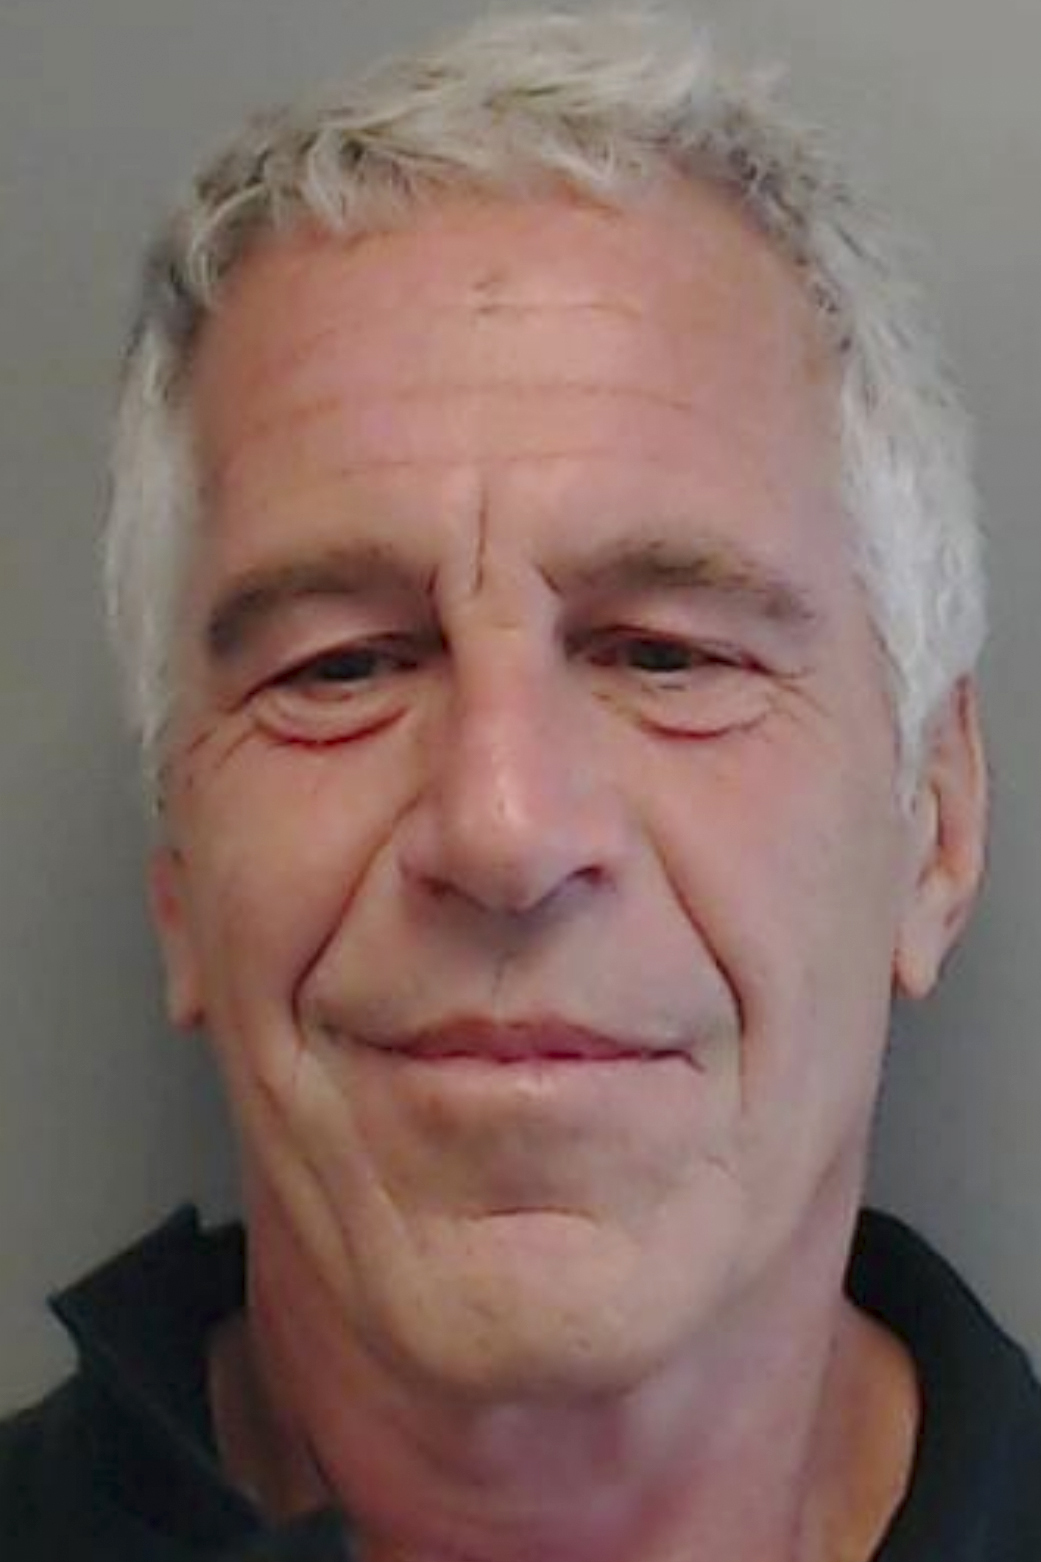 Jeffrey Epstein Denied Bail In Sex Trafficking Case The Northern Echo 